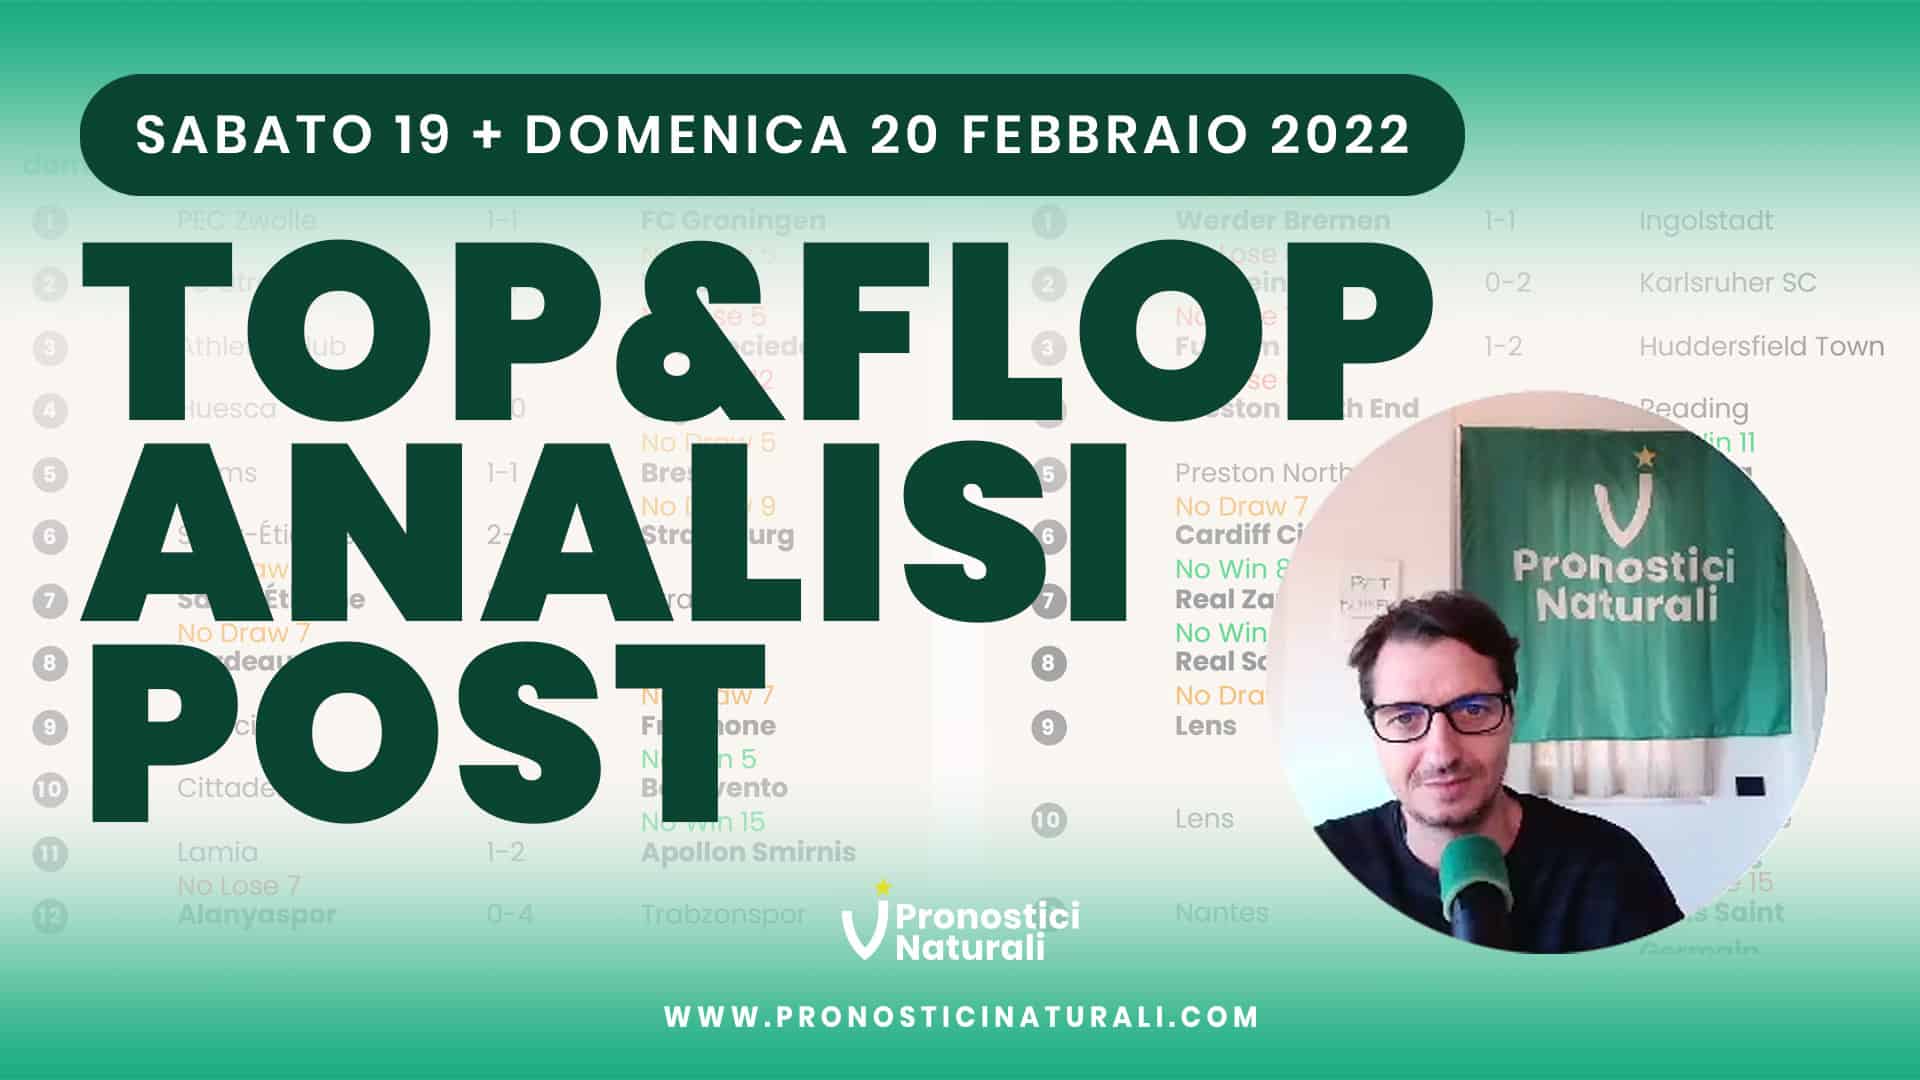 Pronostici Naturali Video Analisi Scommesse Betting Calcio Analisi Post Partite Sabato 19 Domenica 20 Febbraio 2022